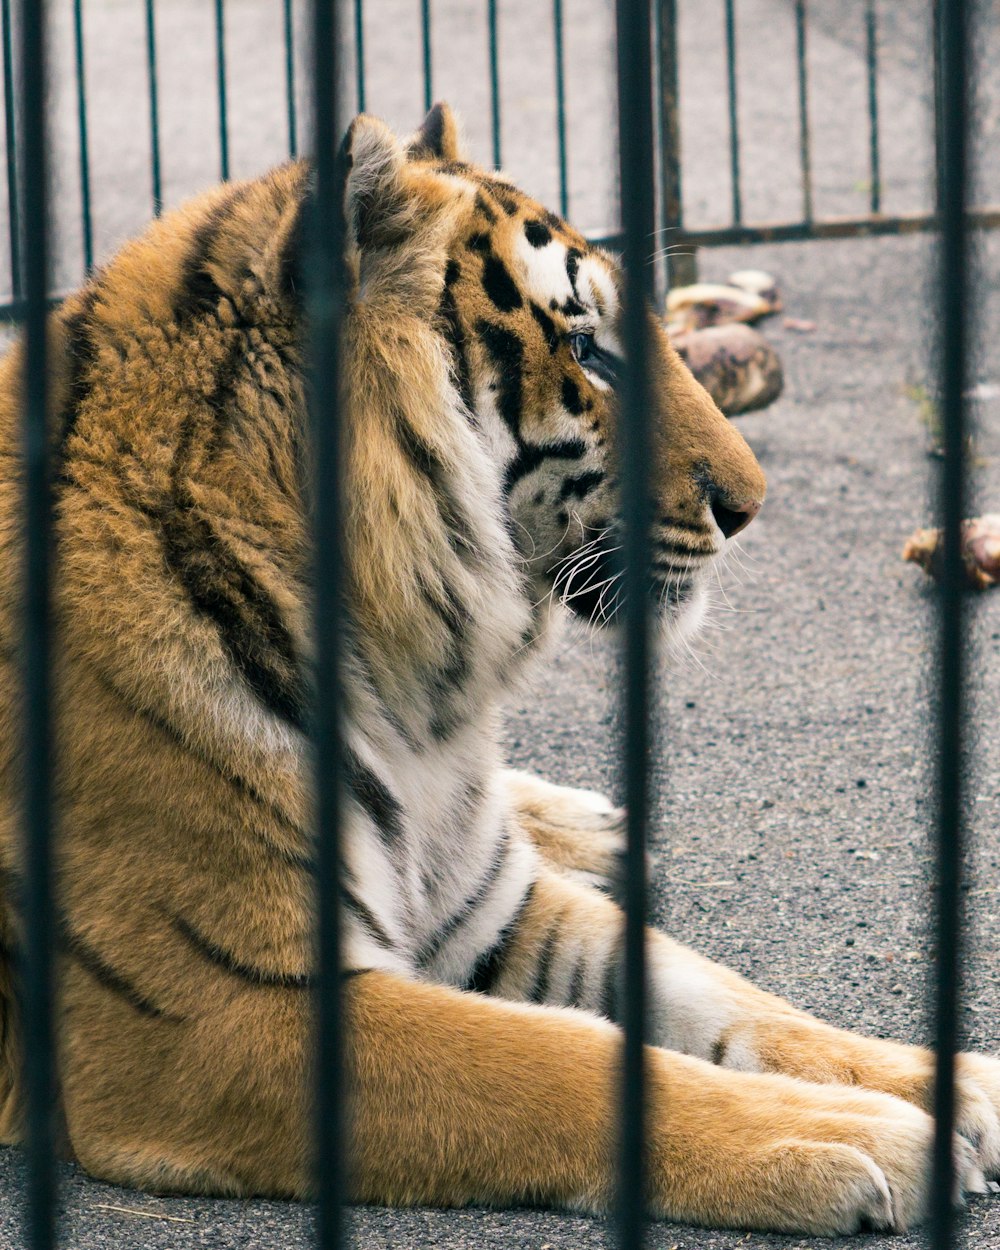 adult tiger inside cage